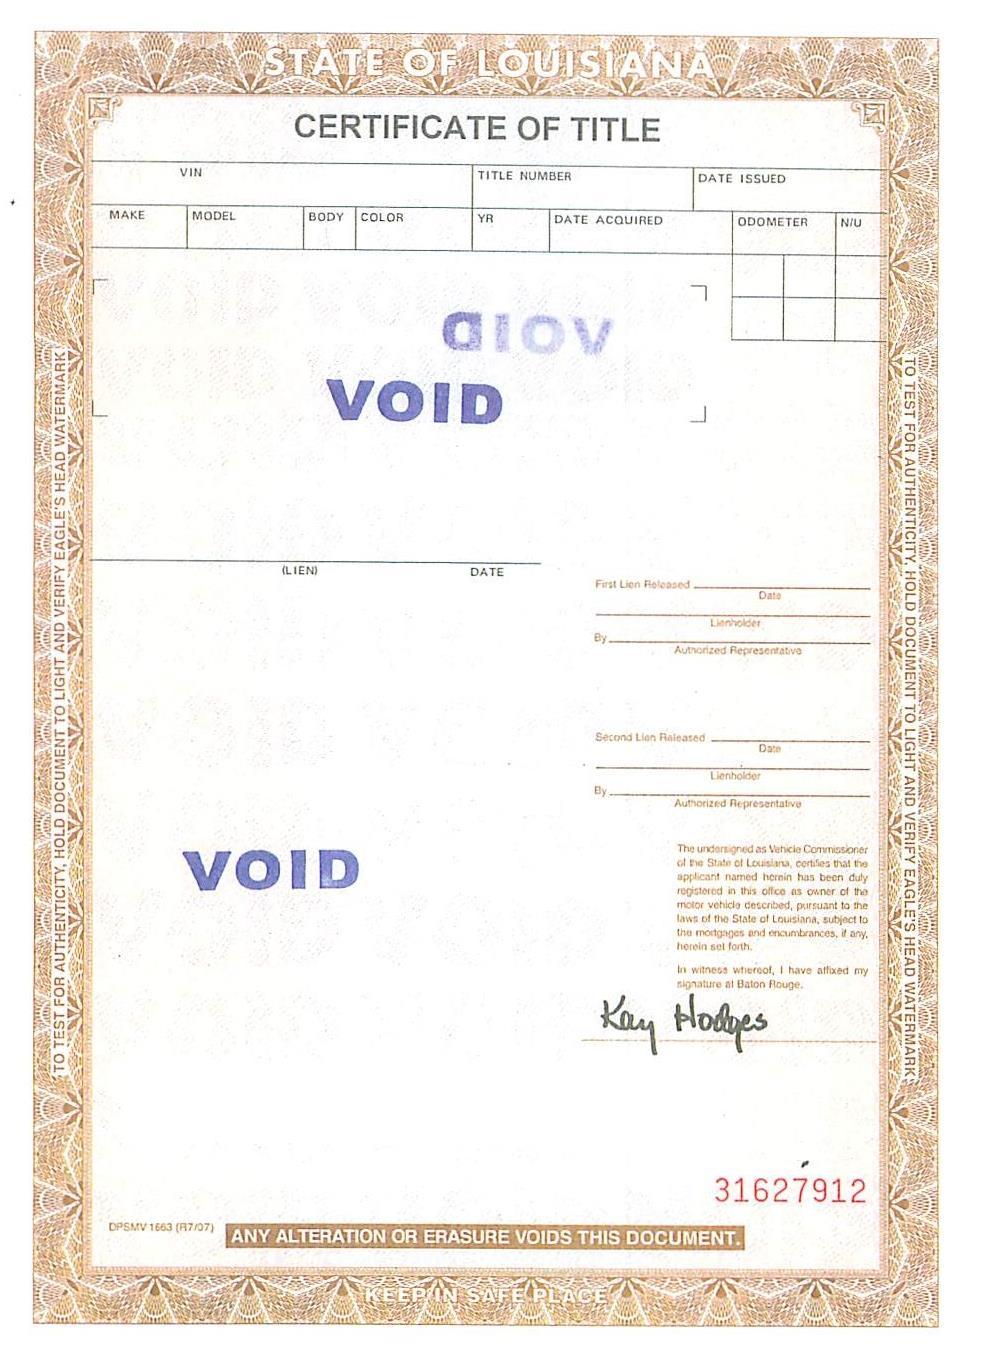 Example Documents